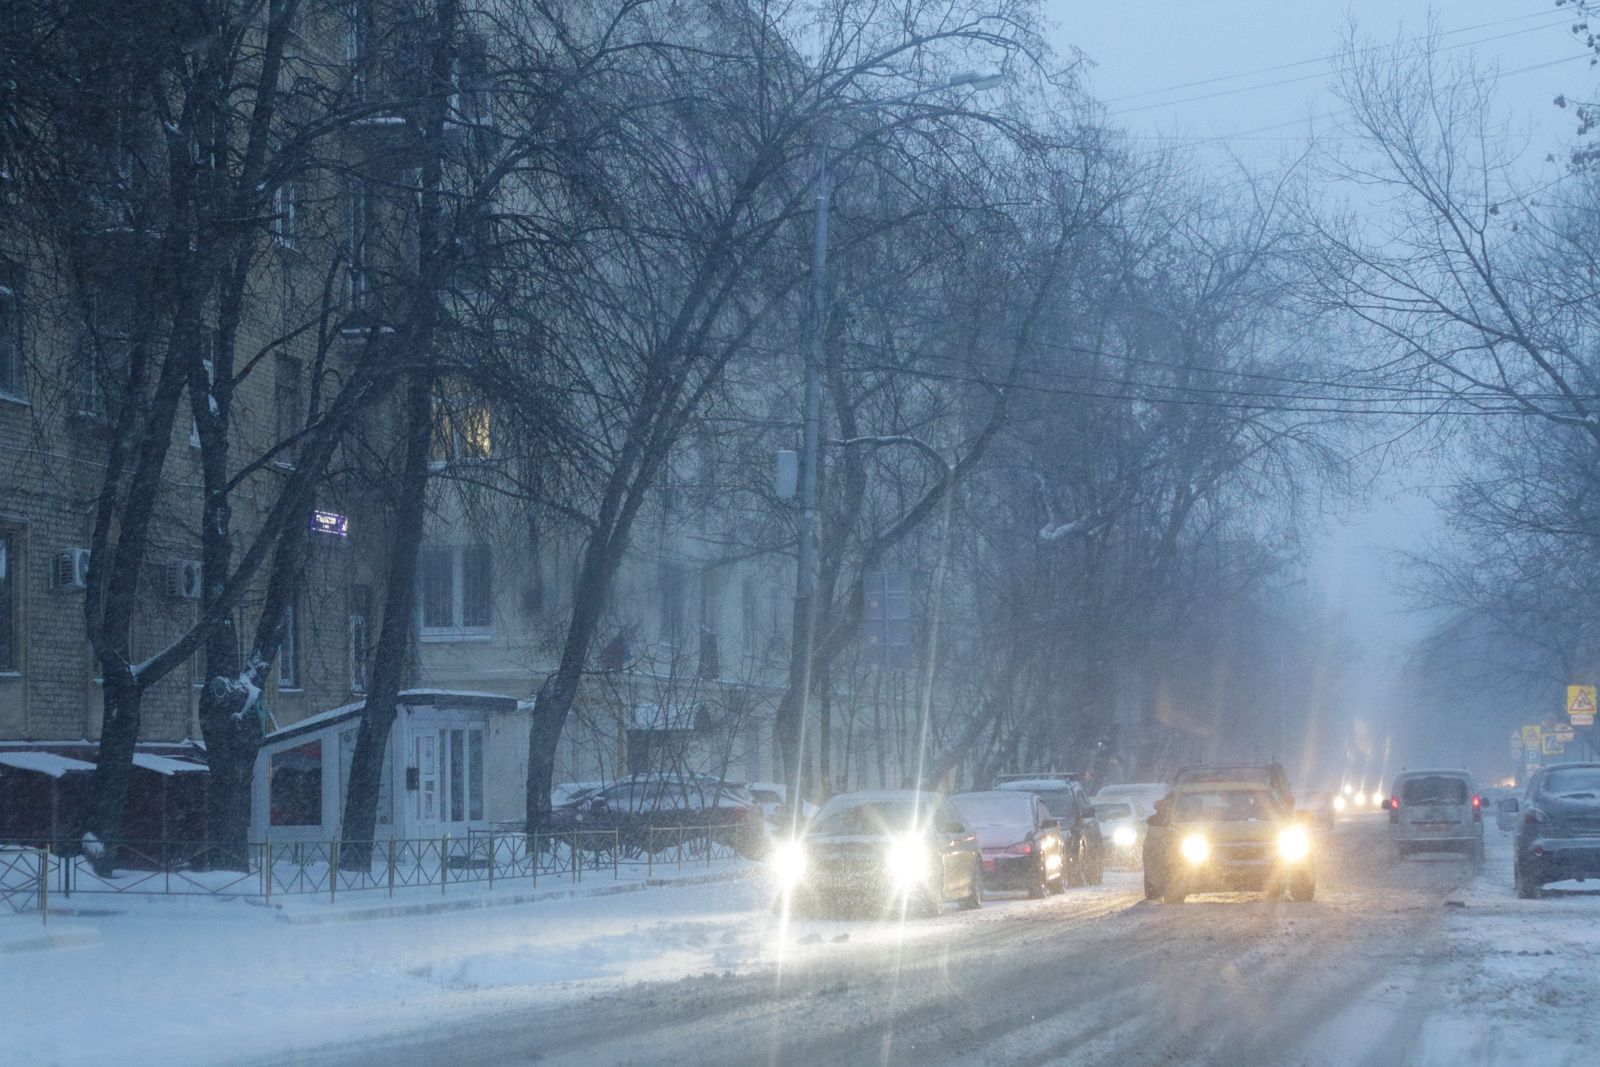 ЦОДД предупреждает об ухудшении дорожной ситуации в Москве в течение дня из-за непогоды